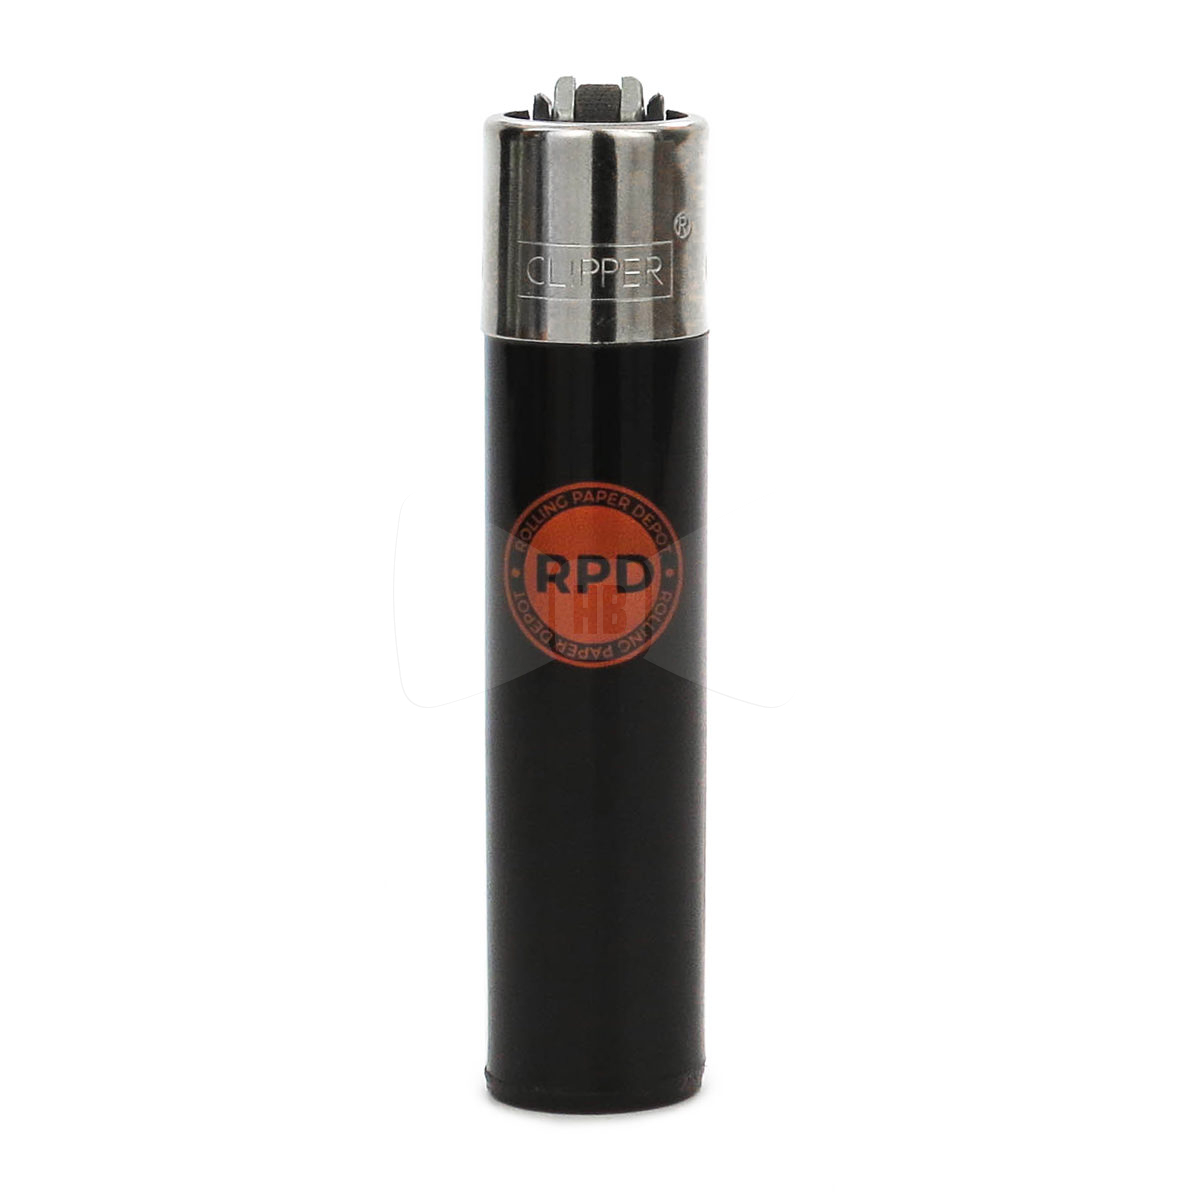 Rolling Paper Depot Clipper Lighter